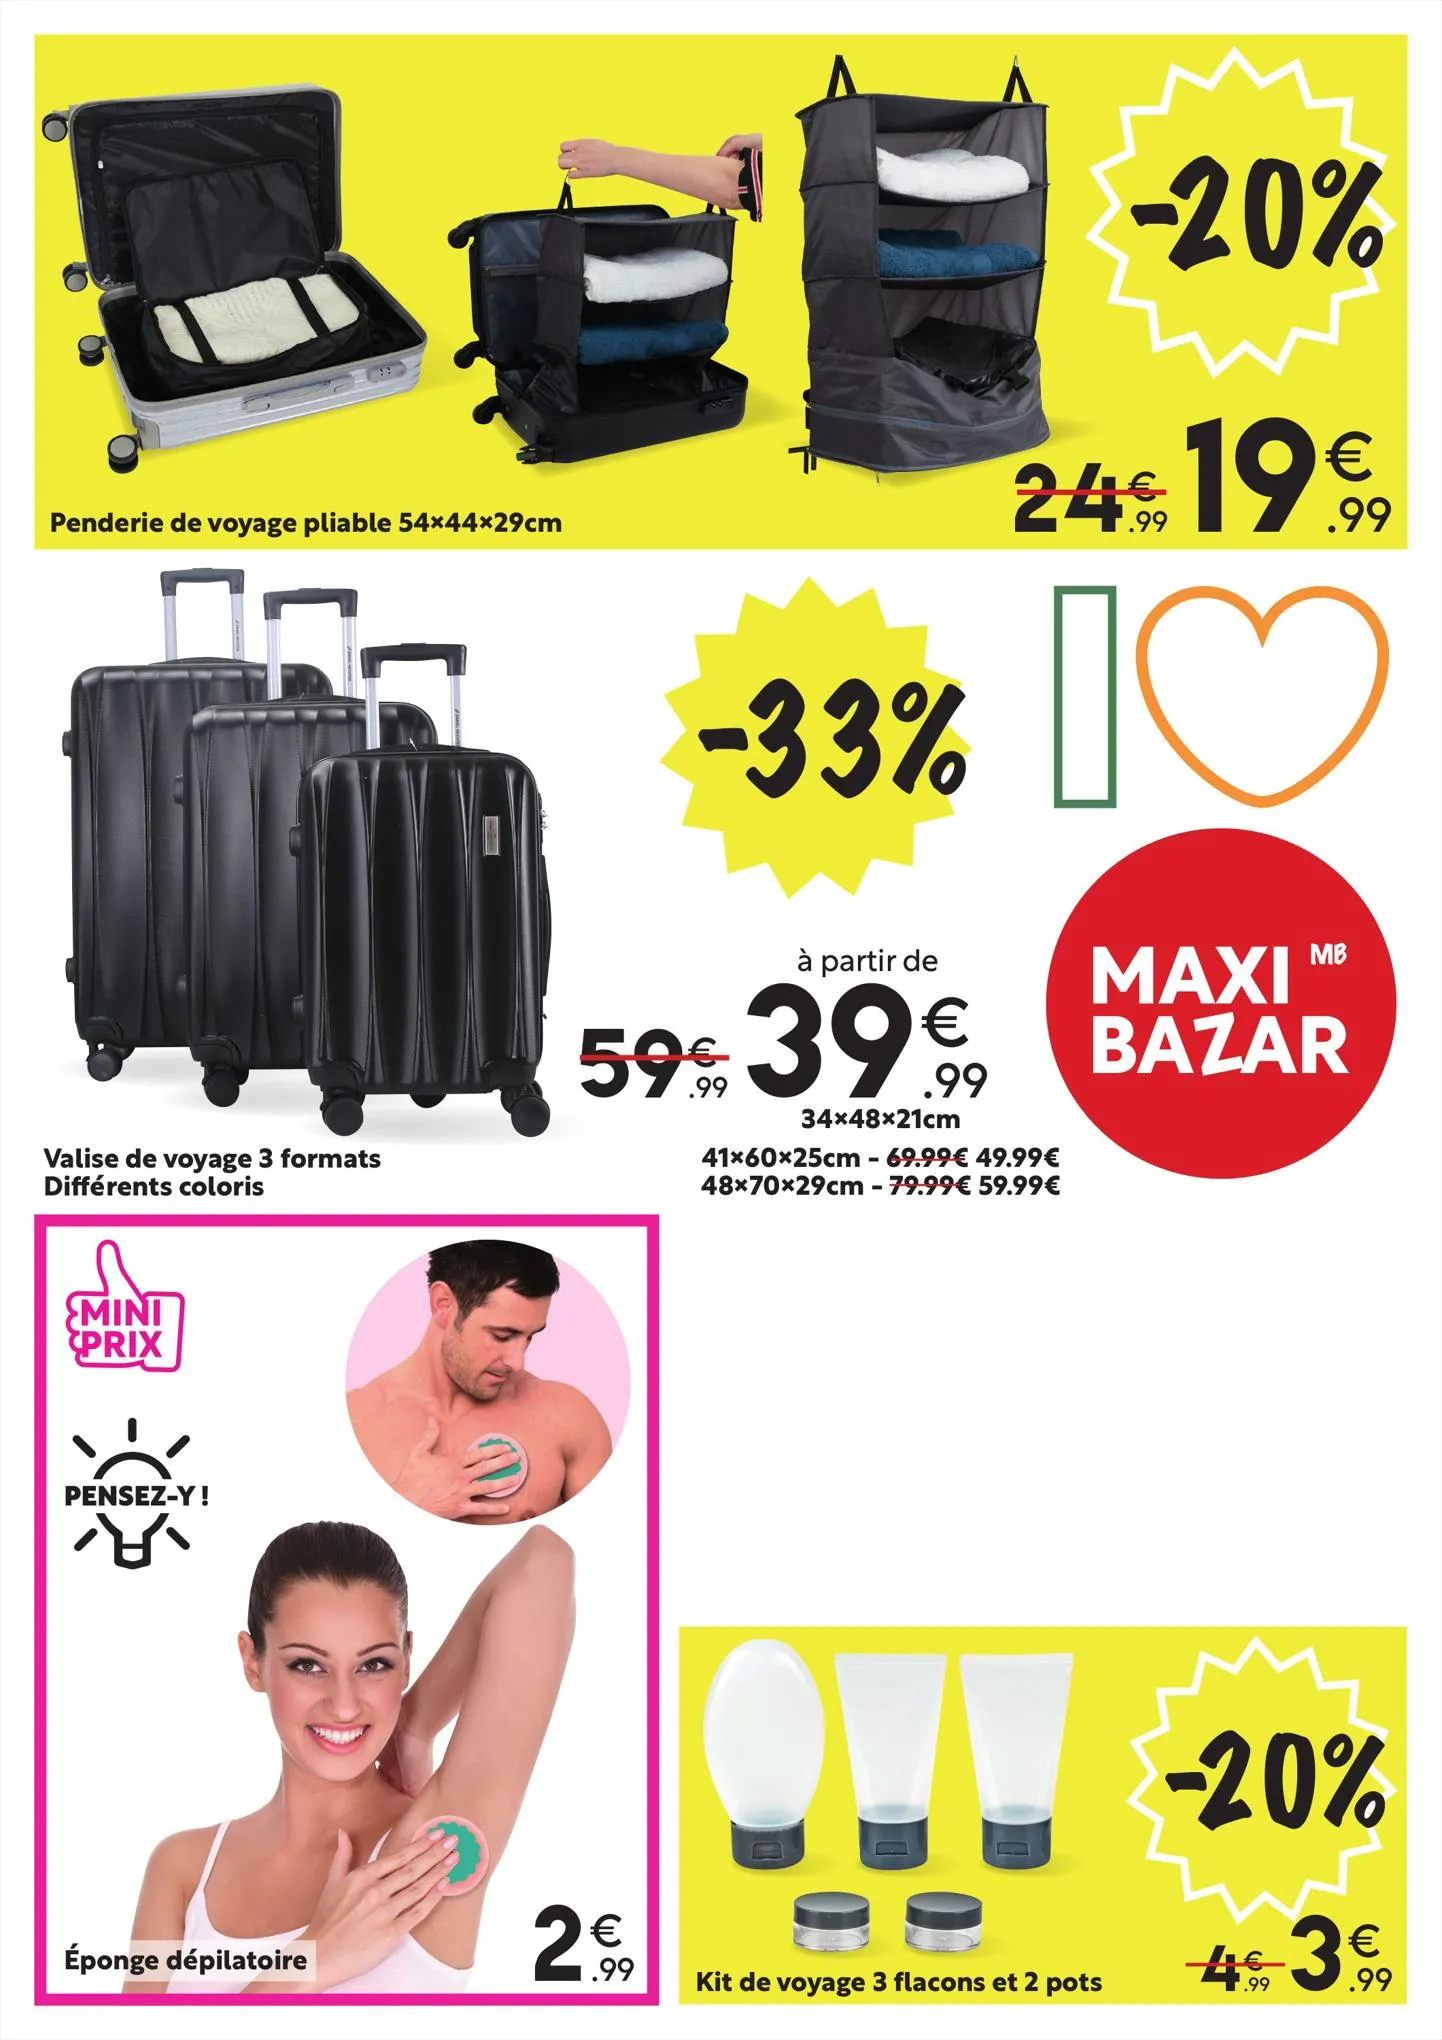 Catalogue Catalogue Maxi Bazar, page 00011